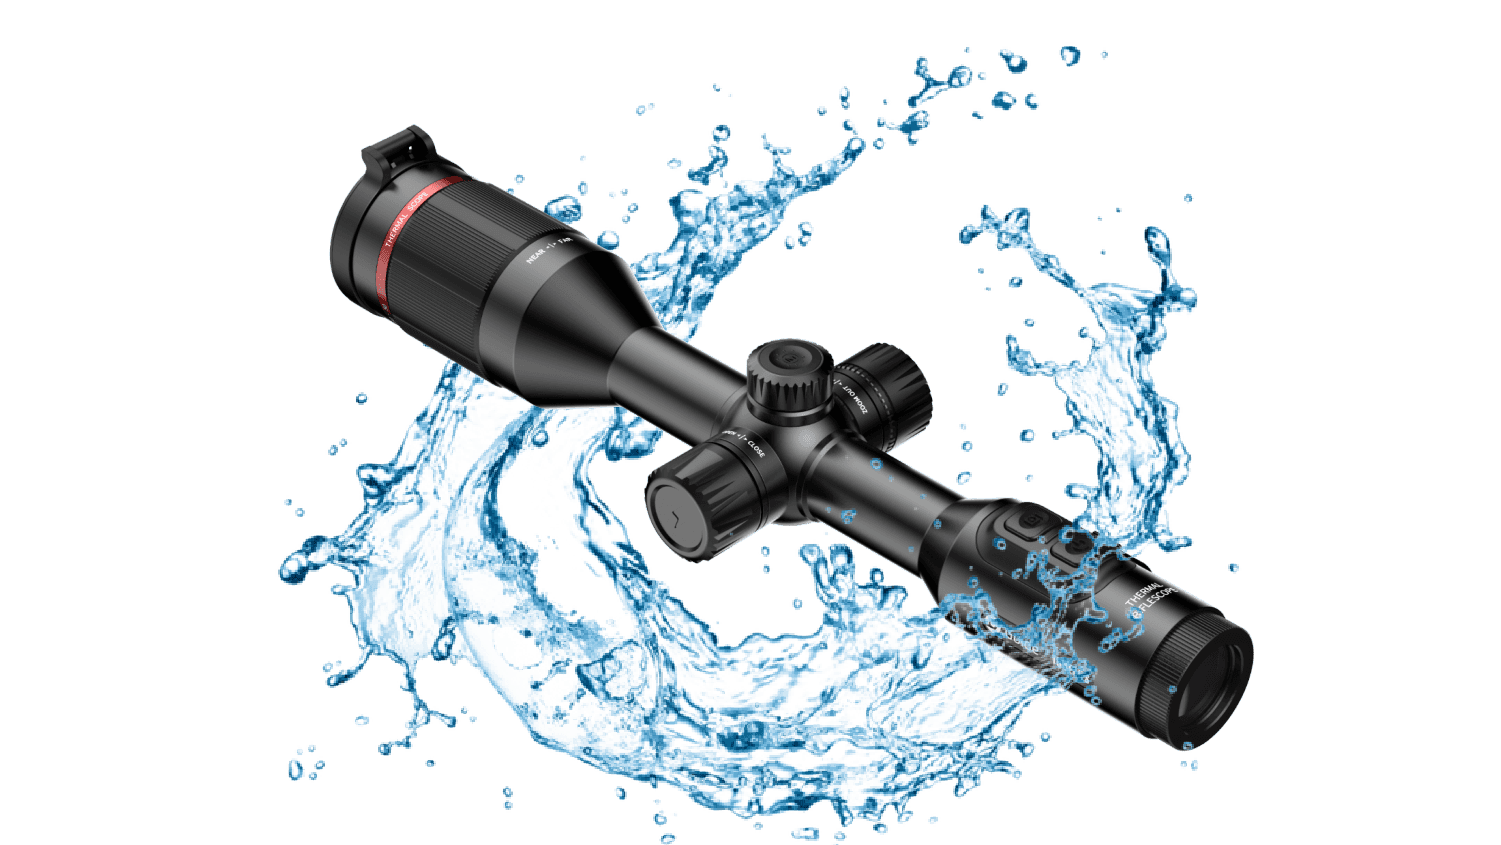 guide tu650 - wodo i wstrząsoodporna luneta termowizyjna TU GUIDE